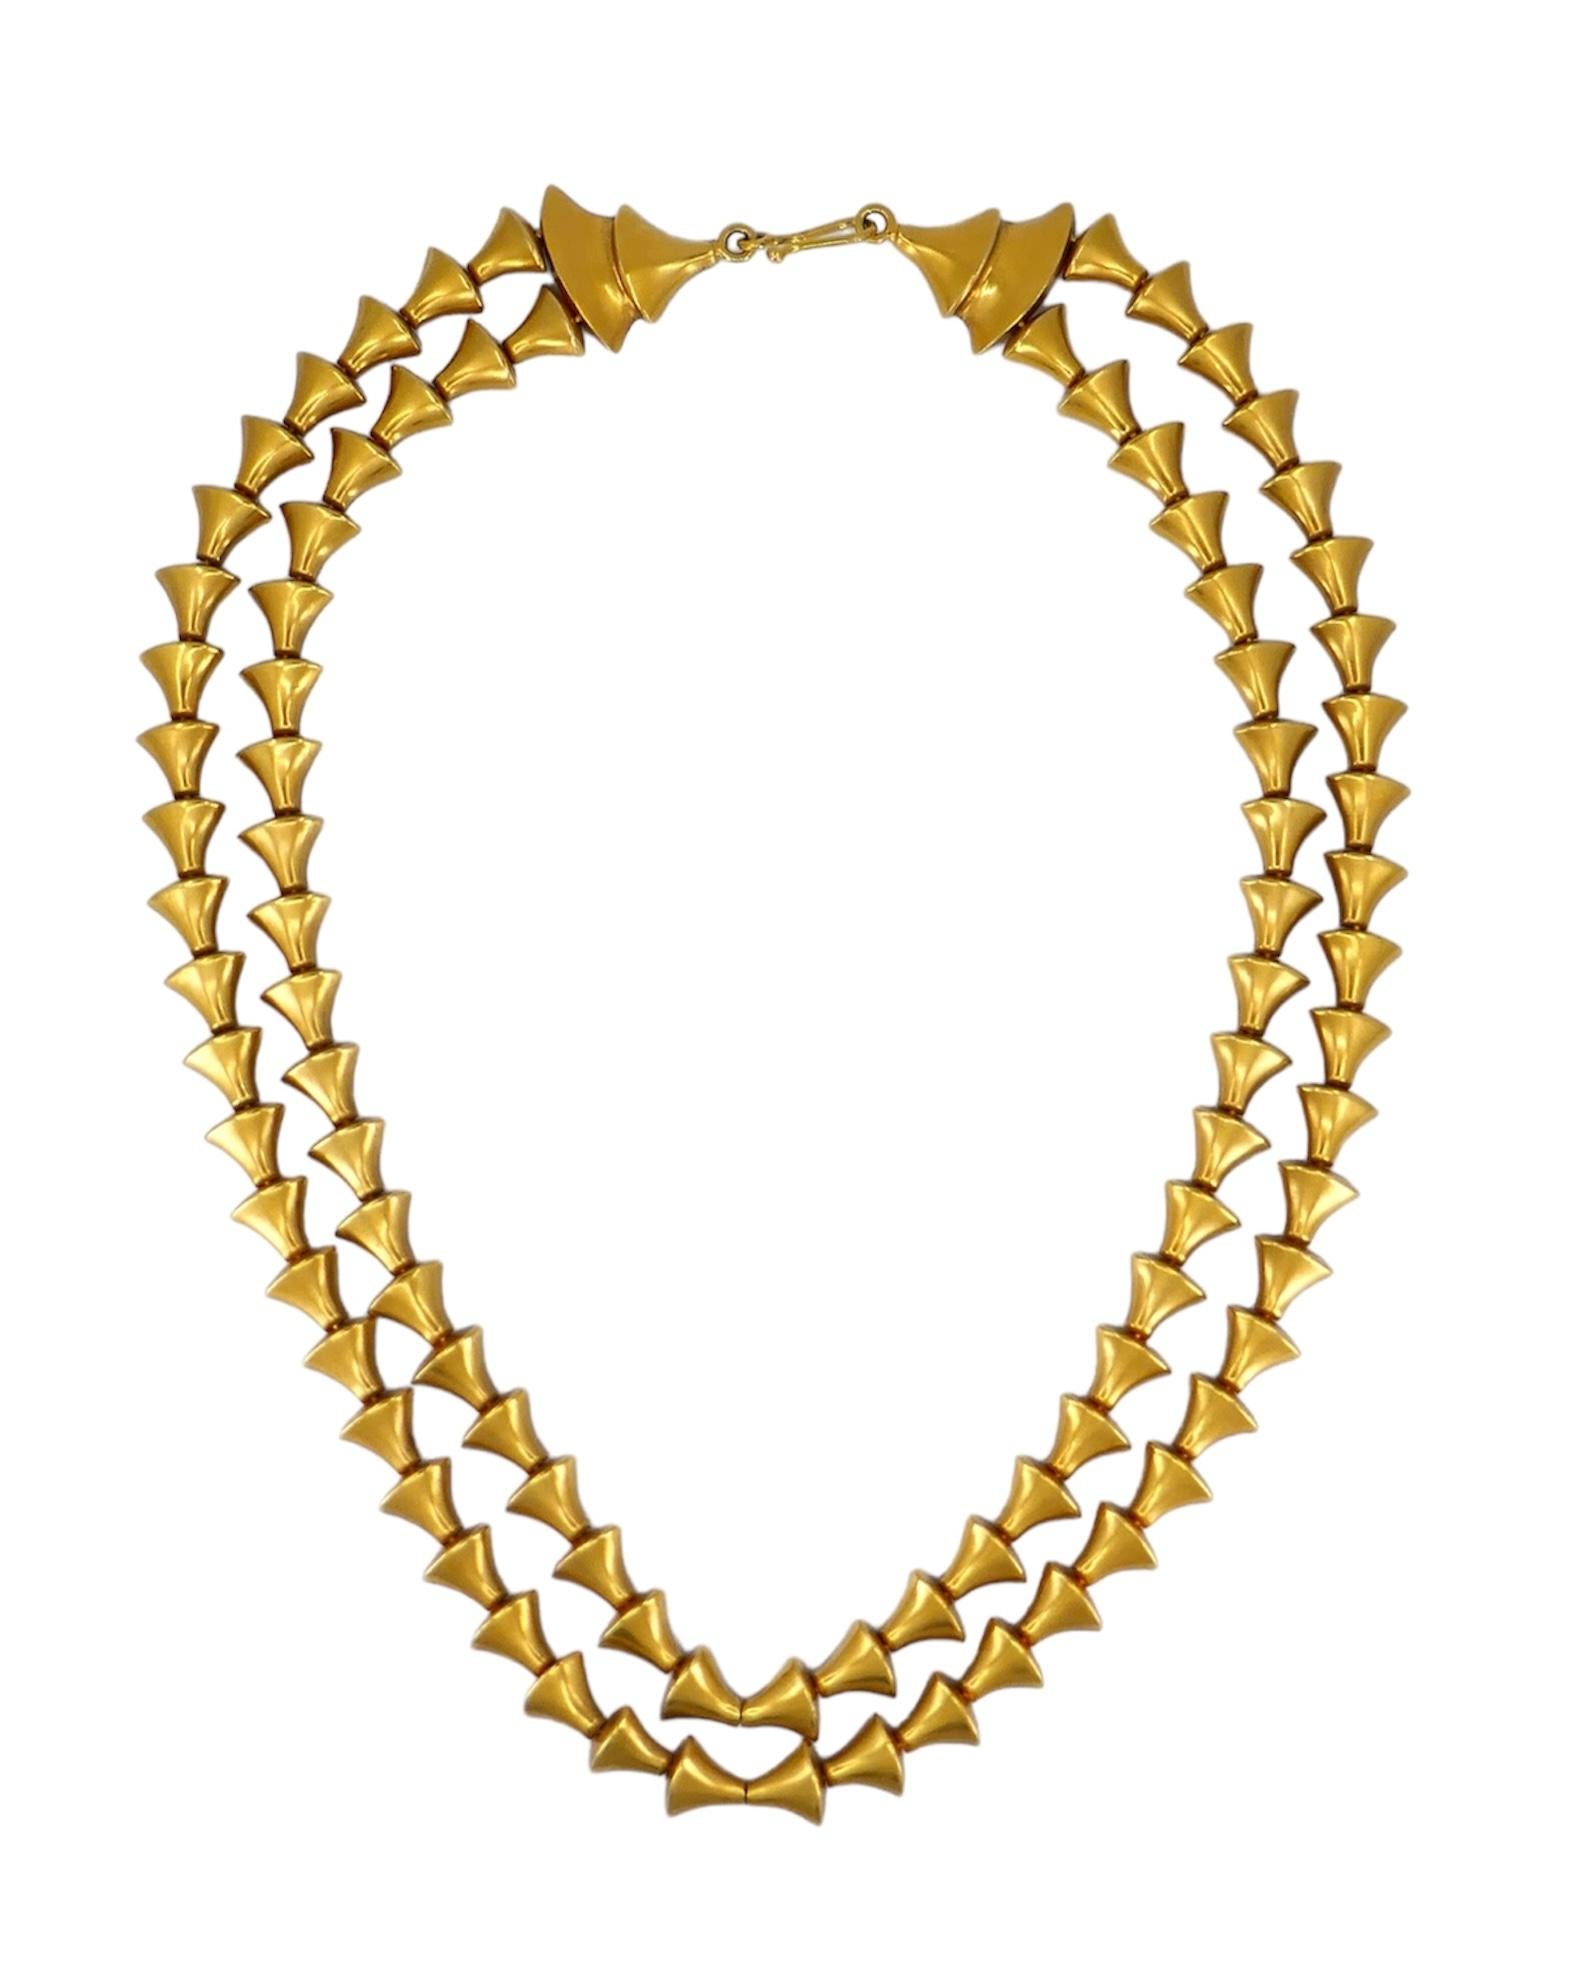 Diese Halskette aus 18-karätigem Gold wurde in den 1970er Jahren vom griechischen Designhaus Zolotas entworfen und verkörpert zeitlose Eleganz und Handwerkskunst. Sie hat ein doppelreihiges Design mit einem Fischhakenverschluss. Mit einem Gewicht